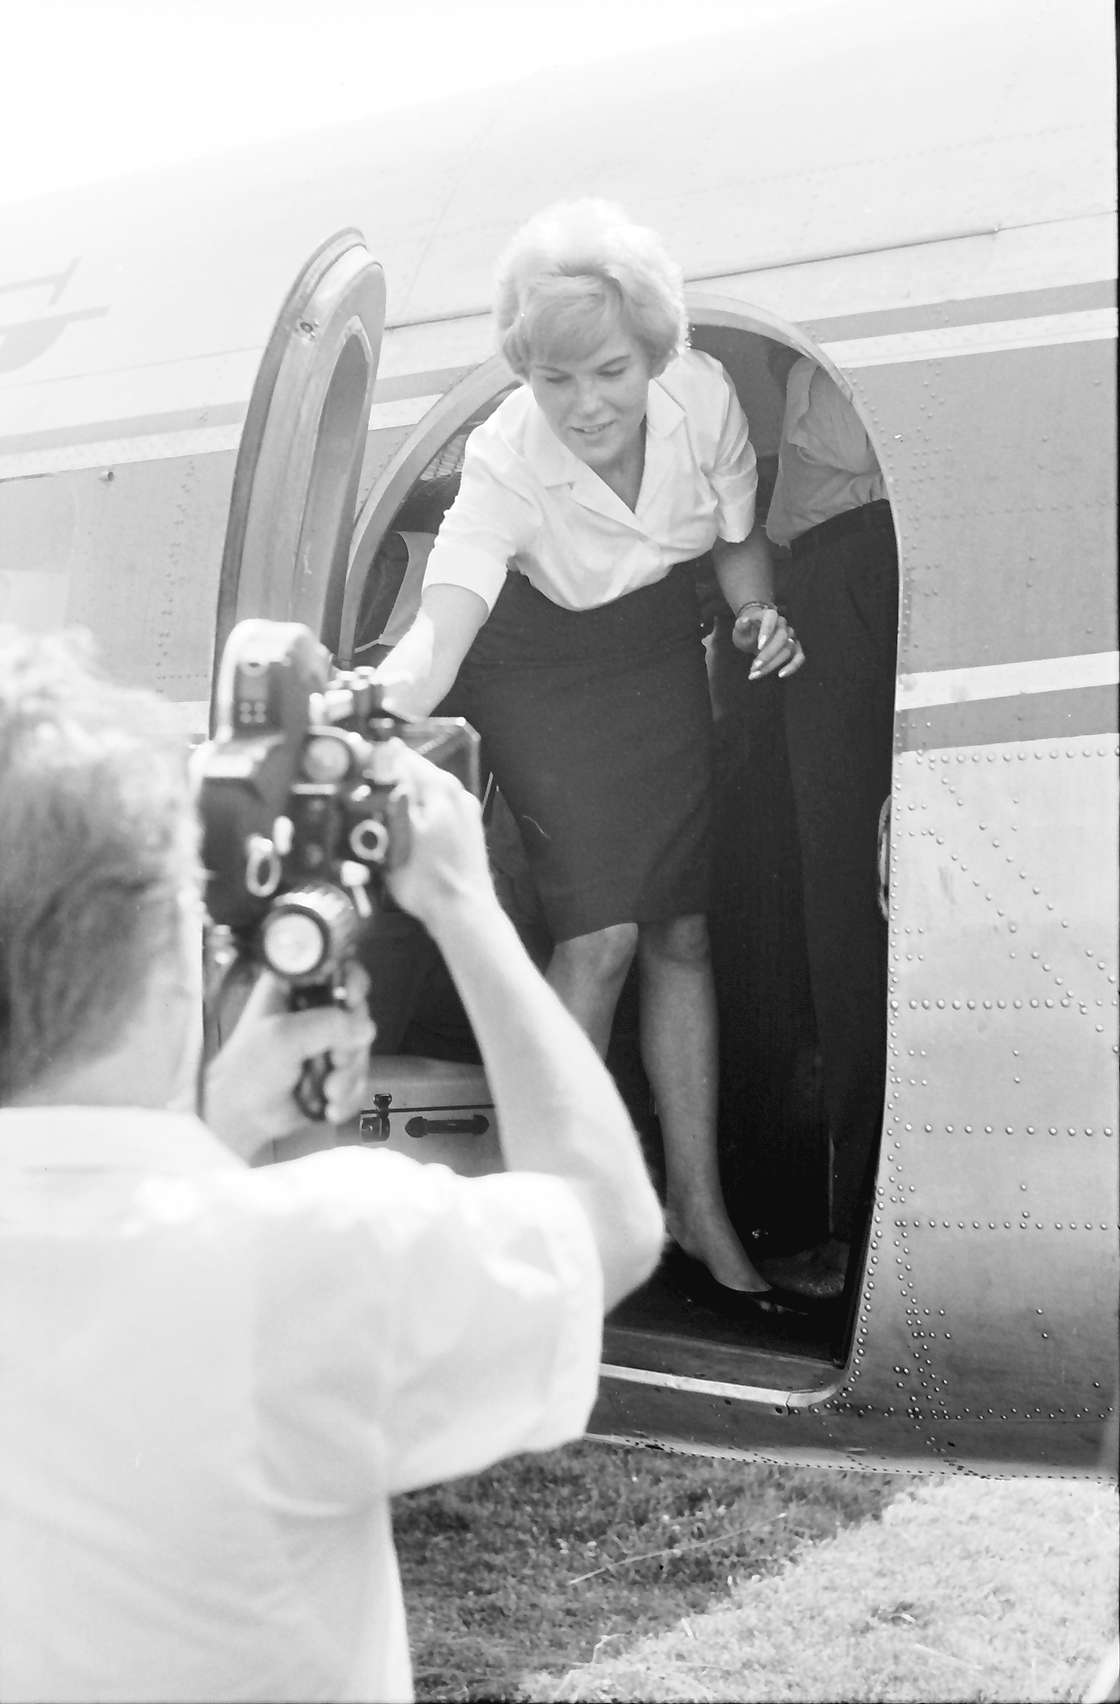 Die Stewardess galt lange Zeit als Traumberuf. Das Bild wurde 1963 von Willy Pragher aufgenommen. Quelle: Landesarchiv BW, StAF Sammlung Willy Pragher W 134 Nr. 071223.